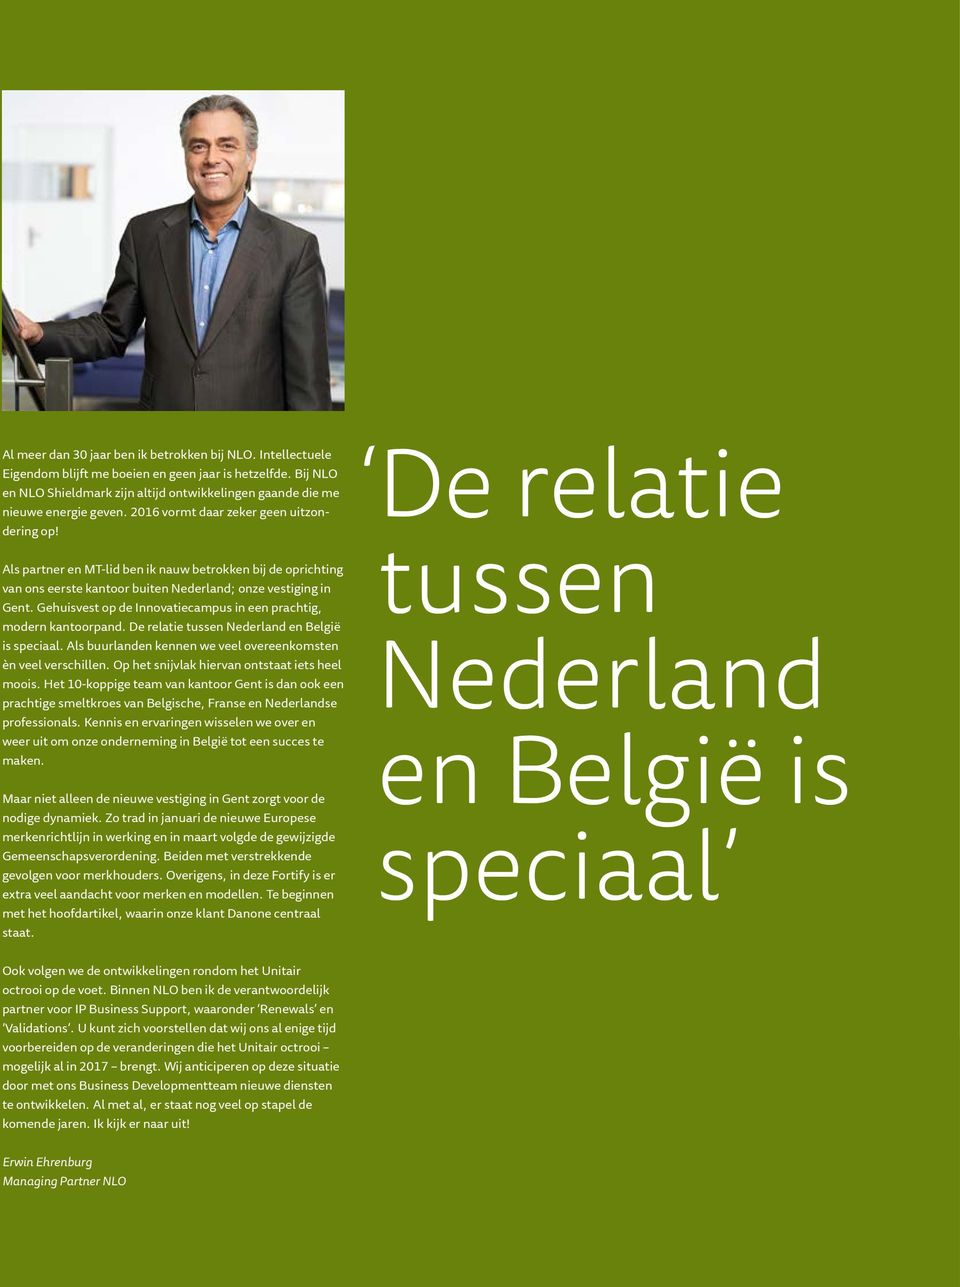 Als partner en MT-lid ben ik nauw betrokken bij de oprichting van ons eerste kantoor buiten Nederland; onze vestiging in Gent. Gehuisvest op de Innovatiecampus in een prachtig, modern kantoorpand.